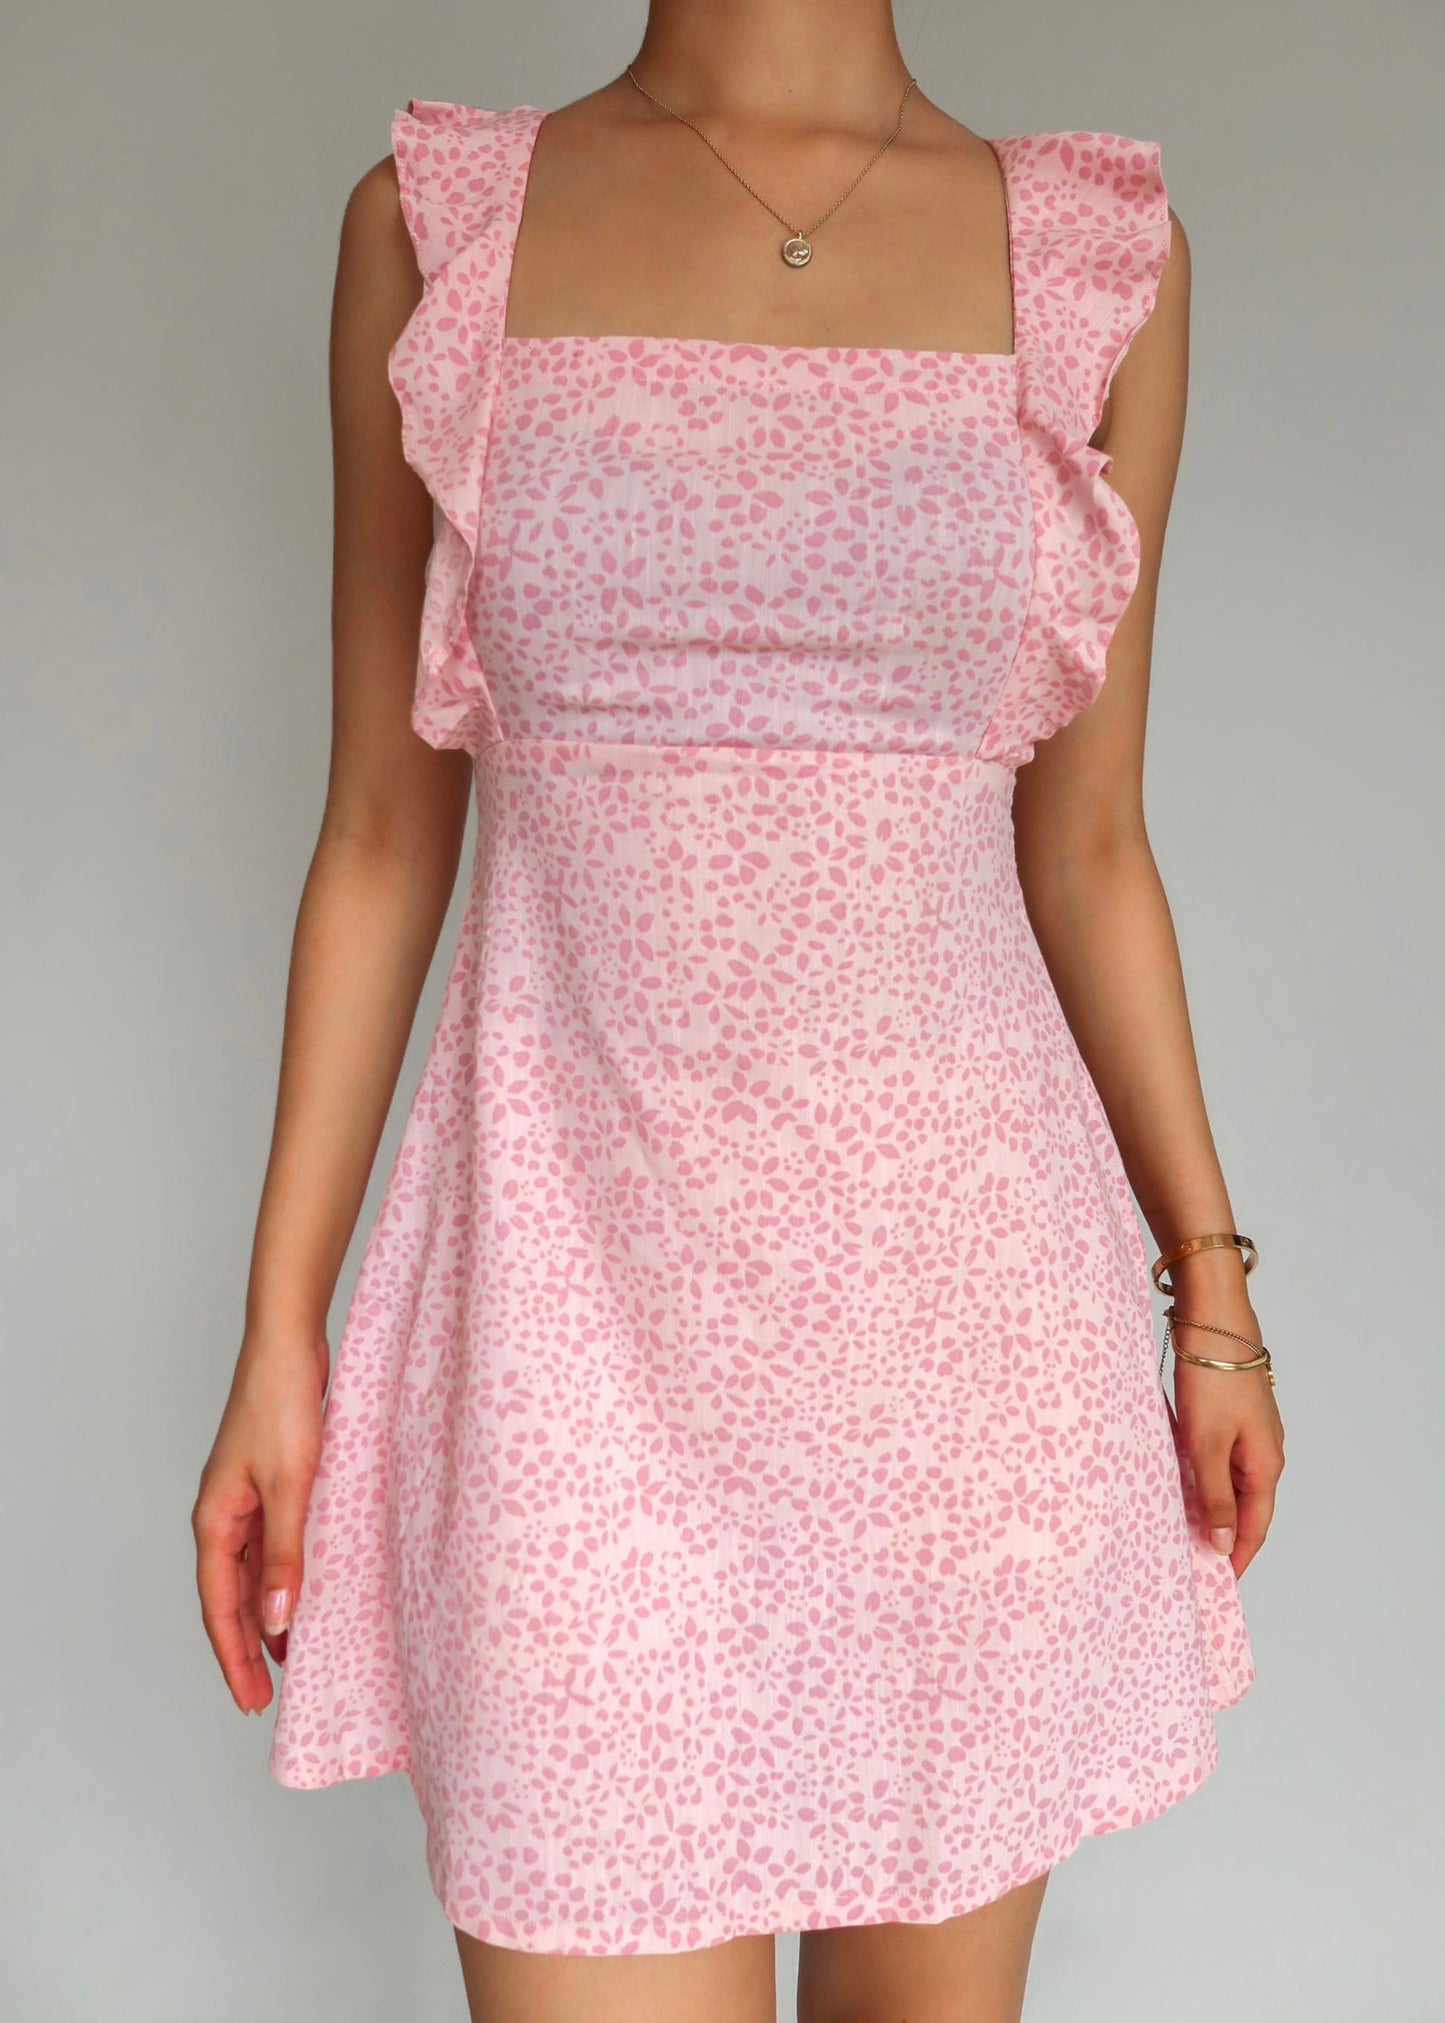 Petal Pink Dress